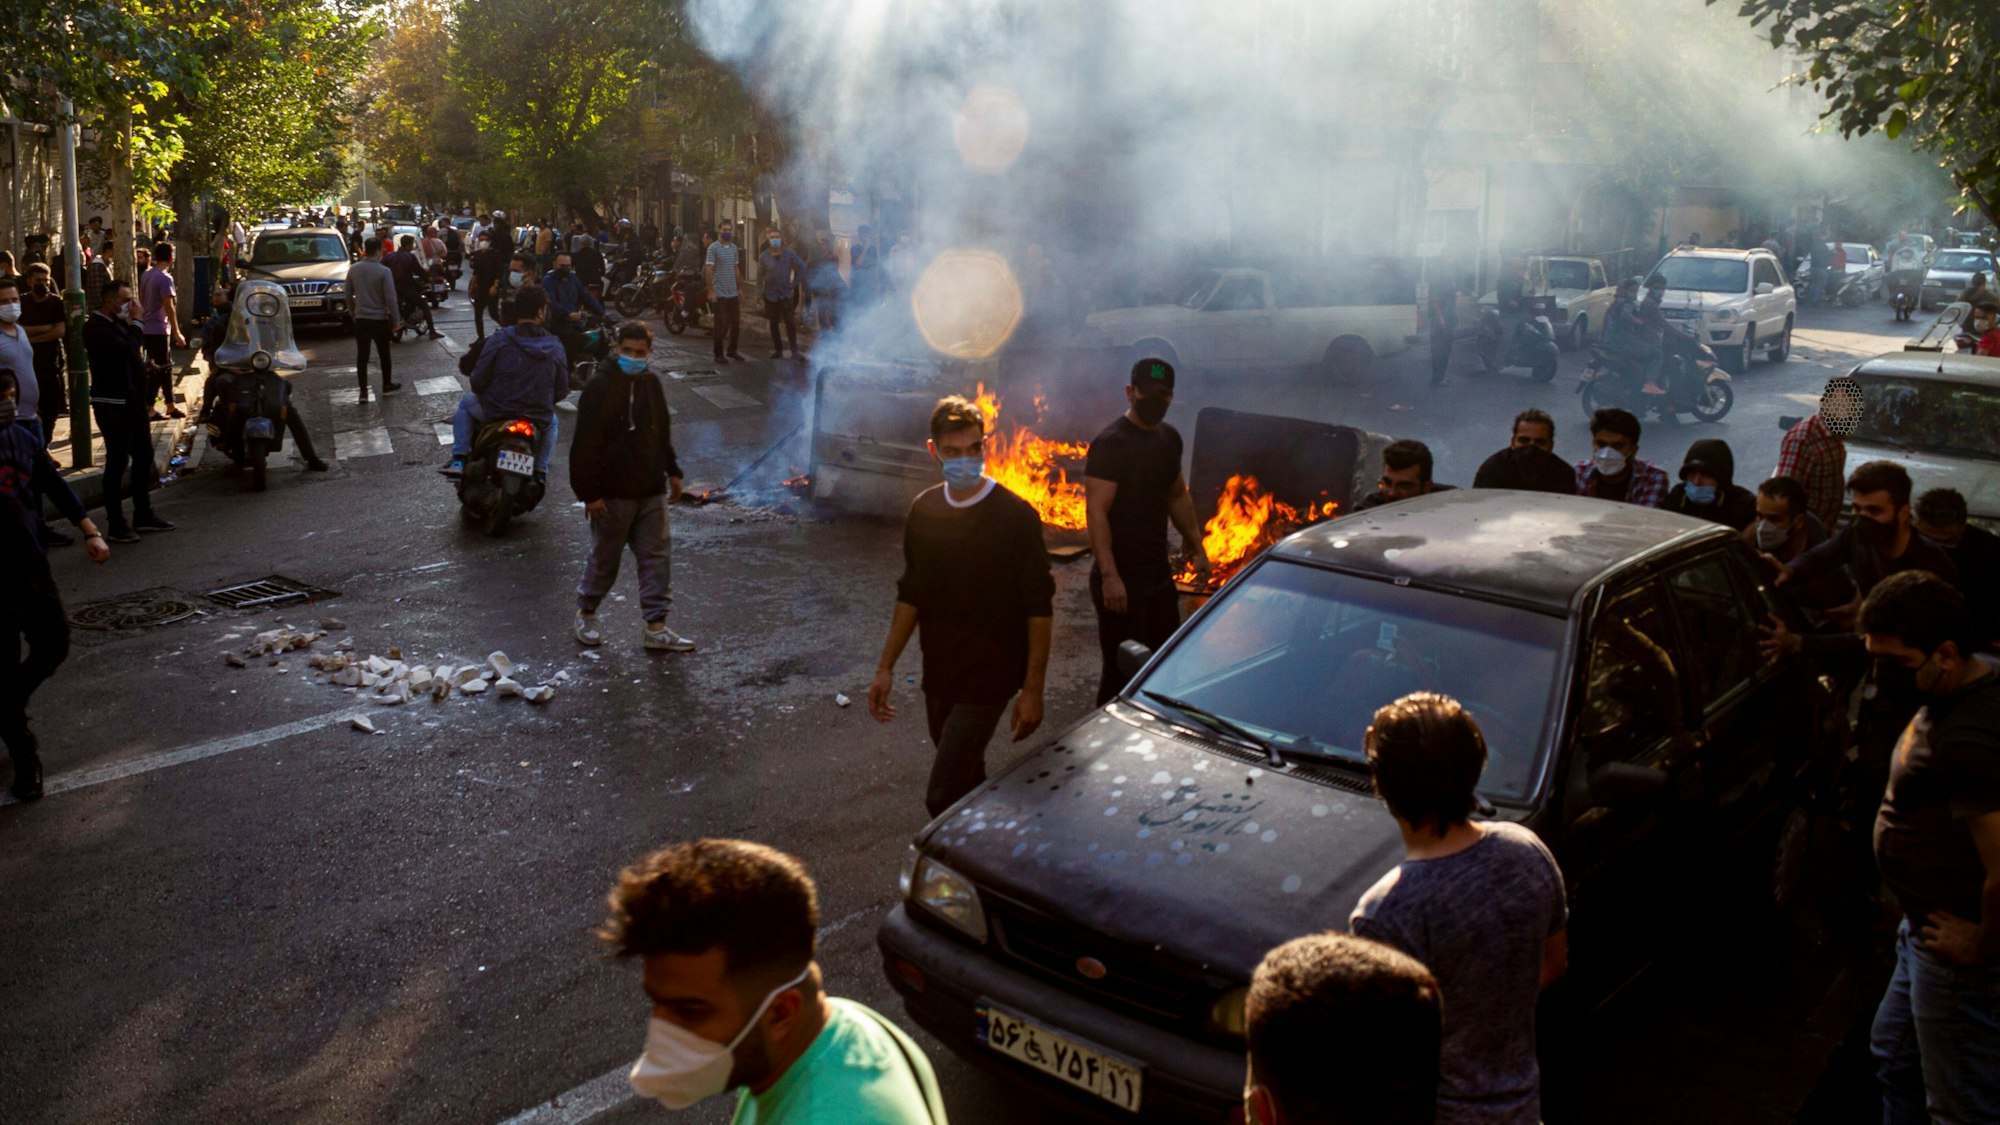 Menschen protestieren in Teheran auf der Straße und haben Barrikaden errichtet. Es brennen Feuer. Viele Demonstranten tragen Gesichtsmasken.